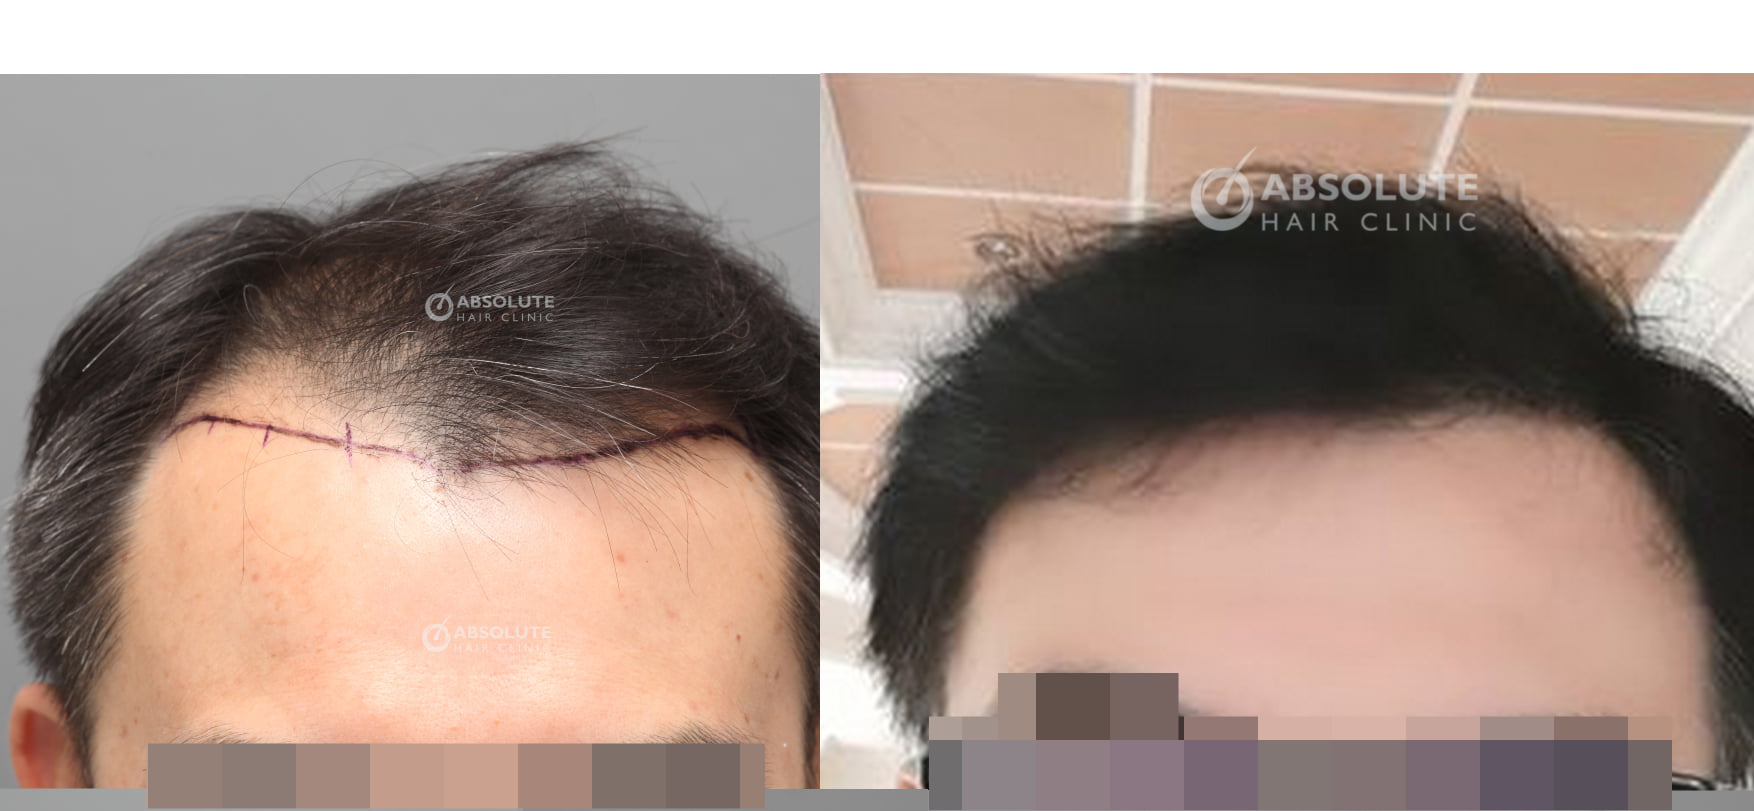 Cấy tóc 3000 nang sau 7 tháng, kỹ thuật FUE - case 84